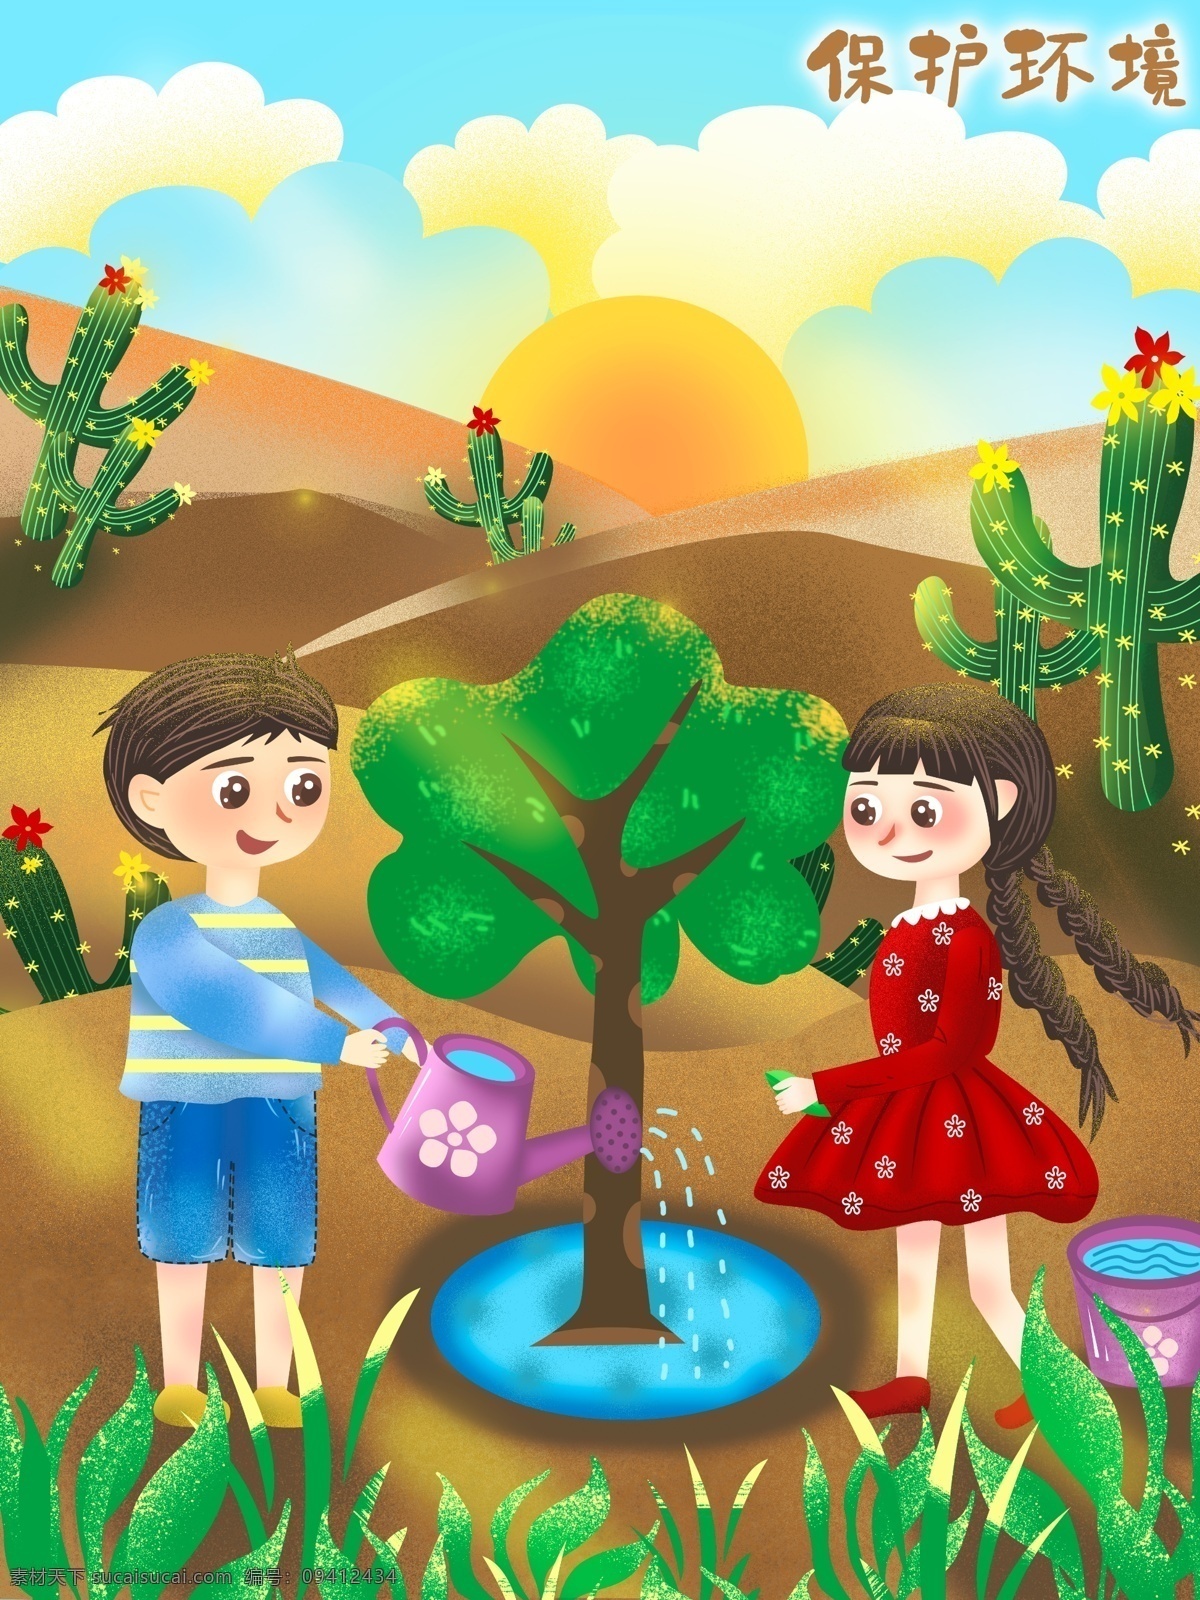 学生 沙漠 种树 保护 环境 世界环境日 环境日 保护环境 植树 女生 男生 仙人掌 绿叶 水 浇水壶